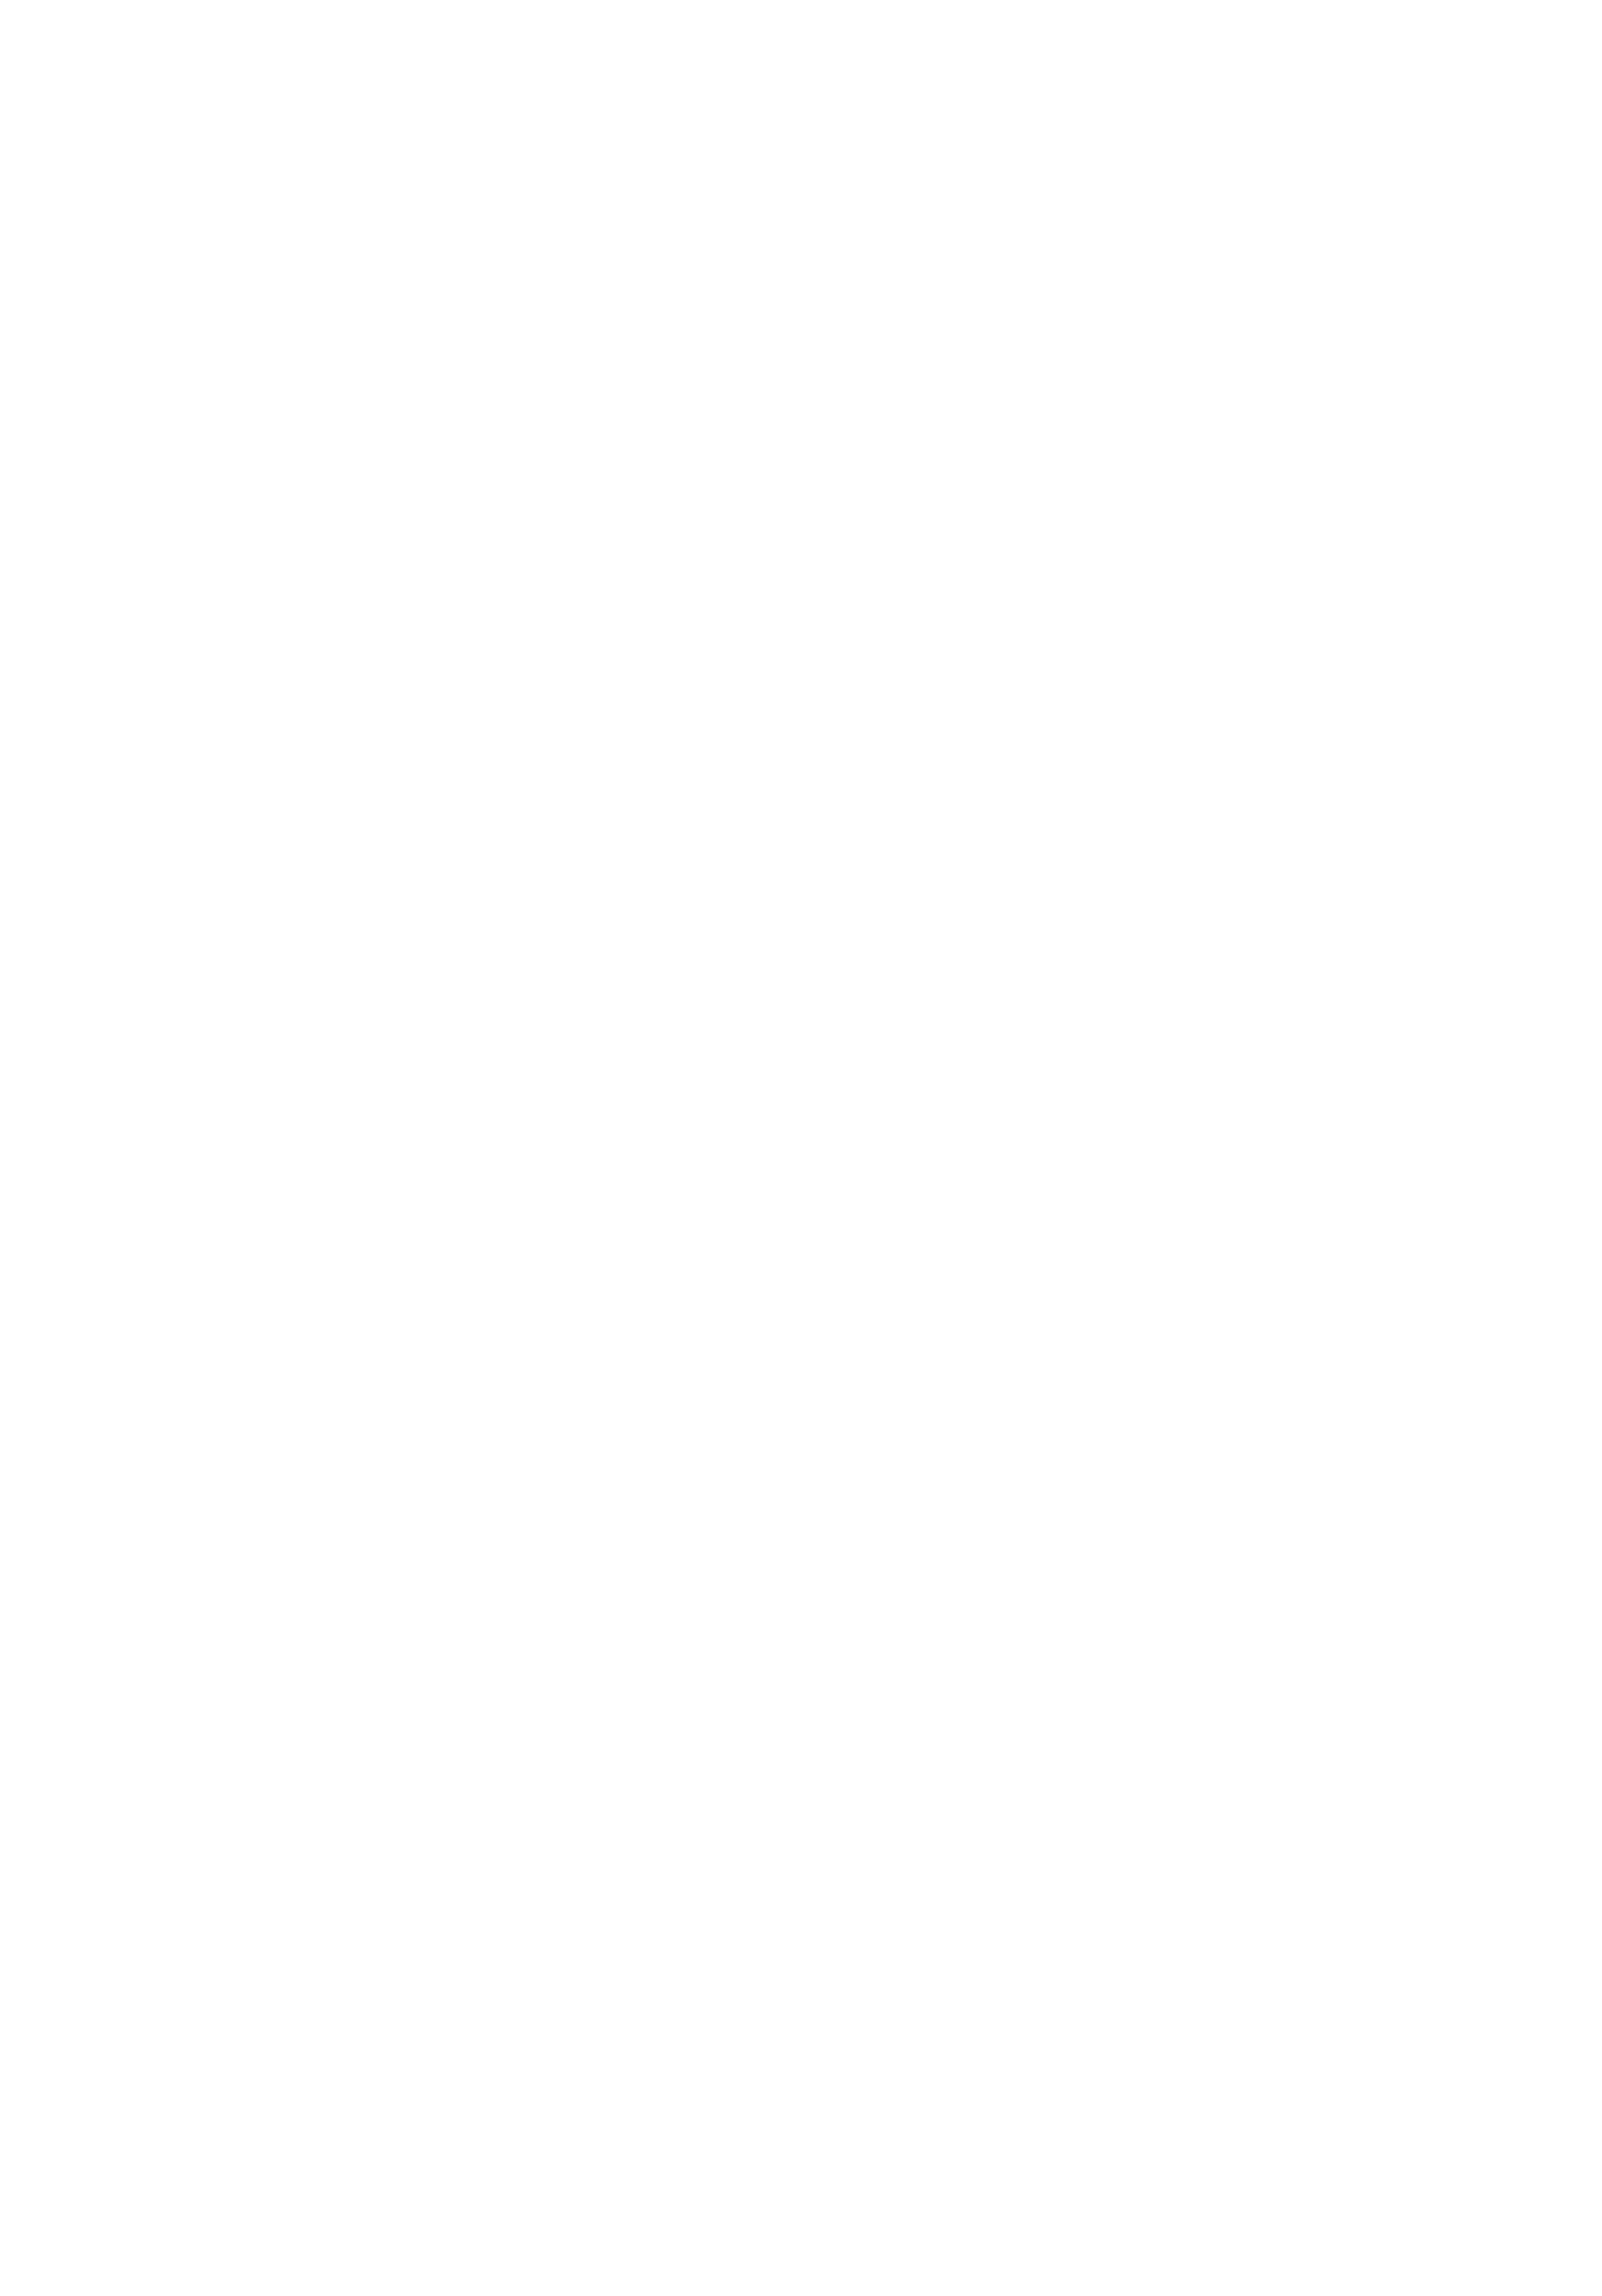 amazenet-logo